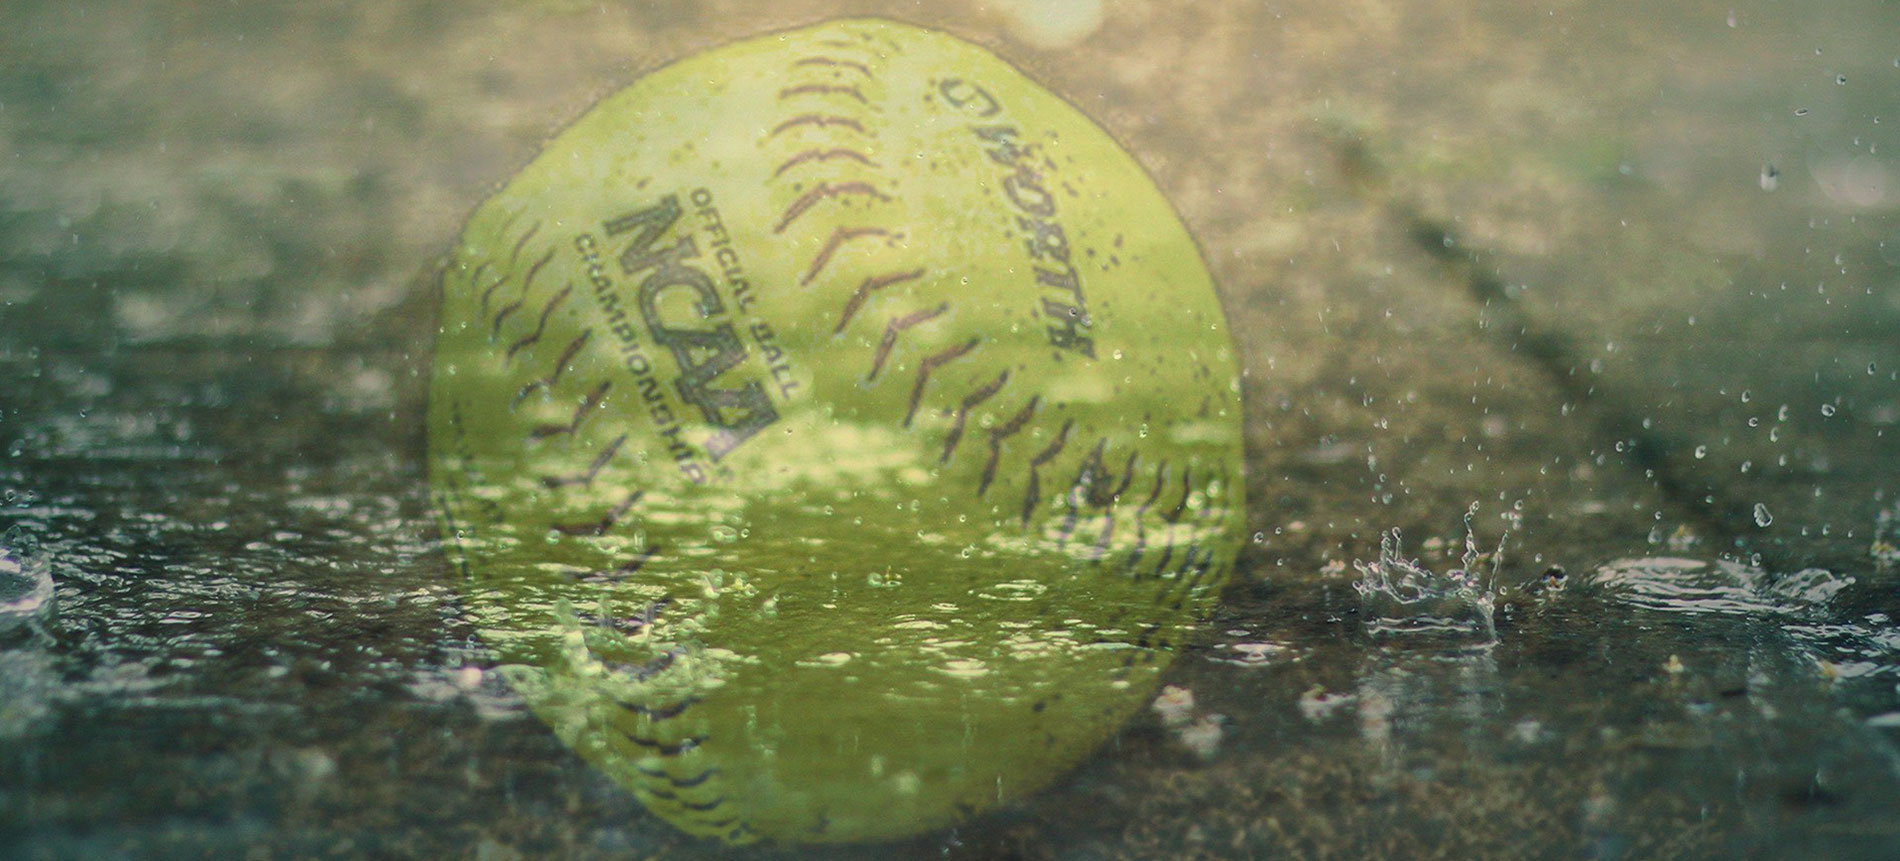 Softball Doubleheader versus Augusta Has Been Postponed